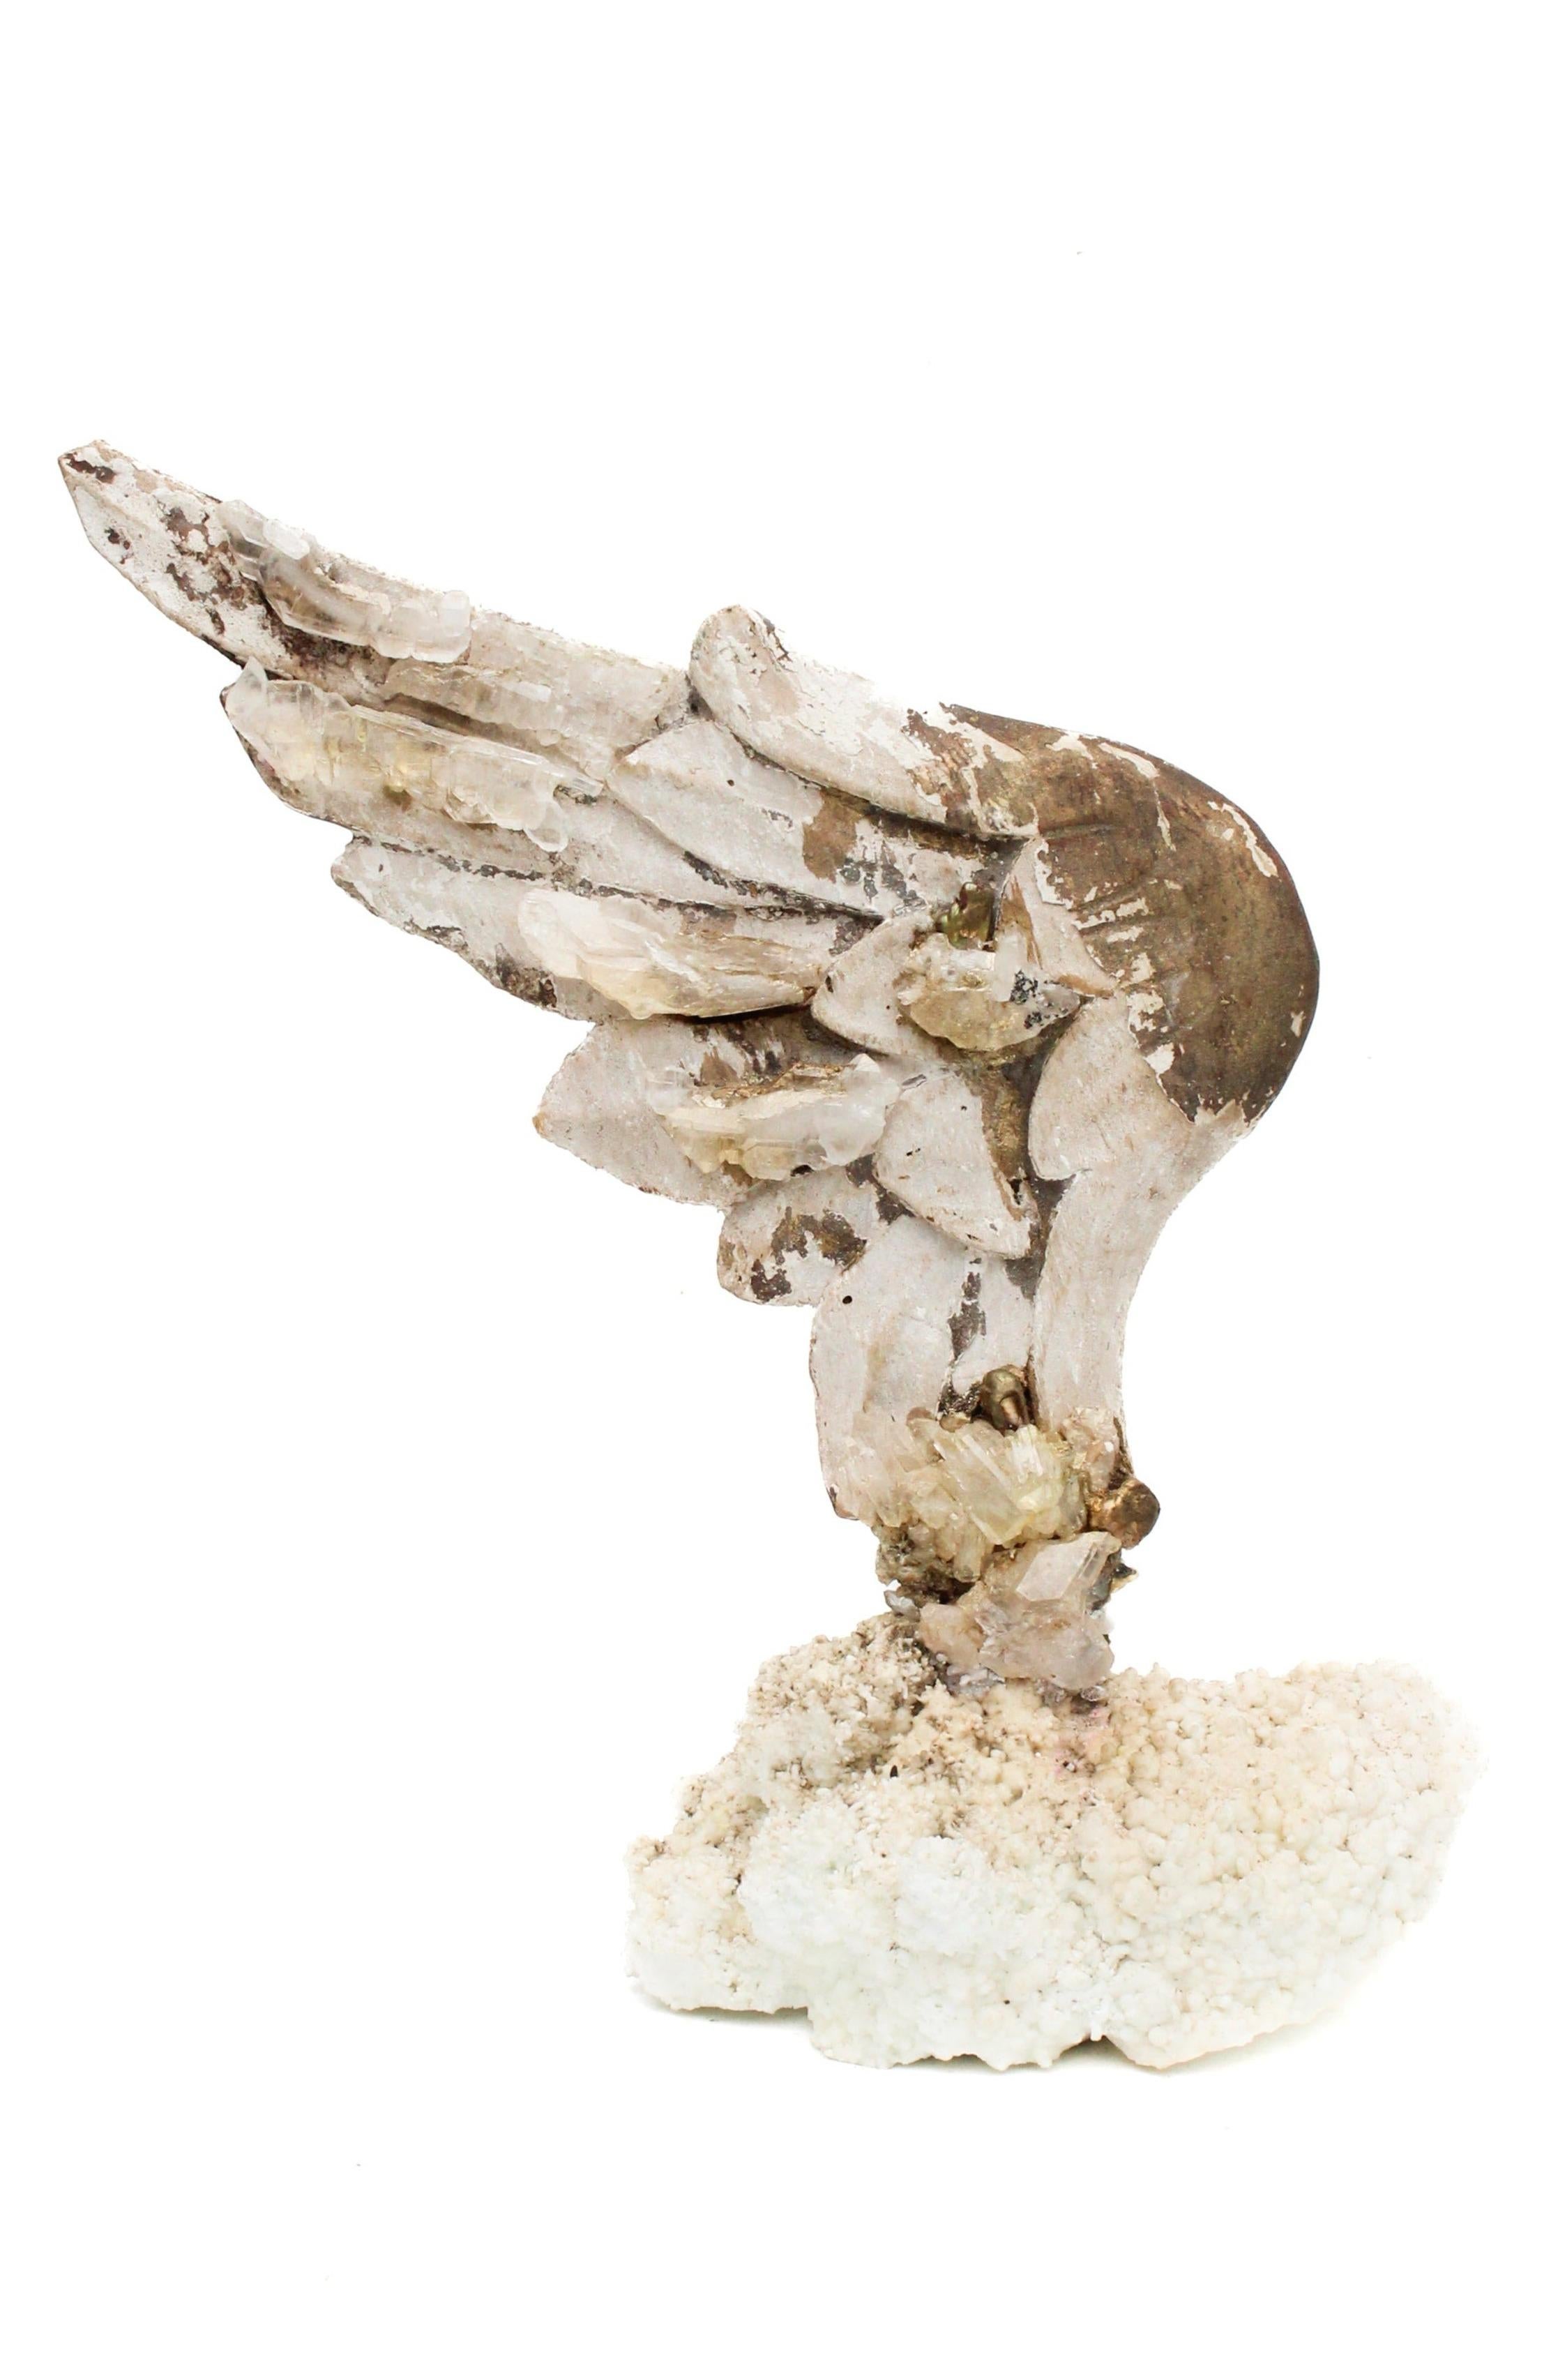 Sculpturale aile d'ange italienne du XVIIIe siècle sculptée à la main, montée sur aragonite blanche et ornée de cristaux faden, de quartz de cristal et de perles baroques. L'aile d'ange sculptée à la main faisait autrefois partie d'une